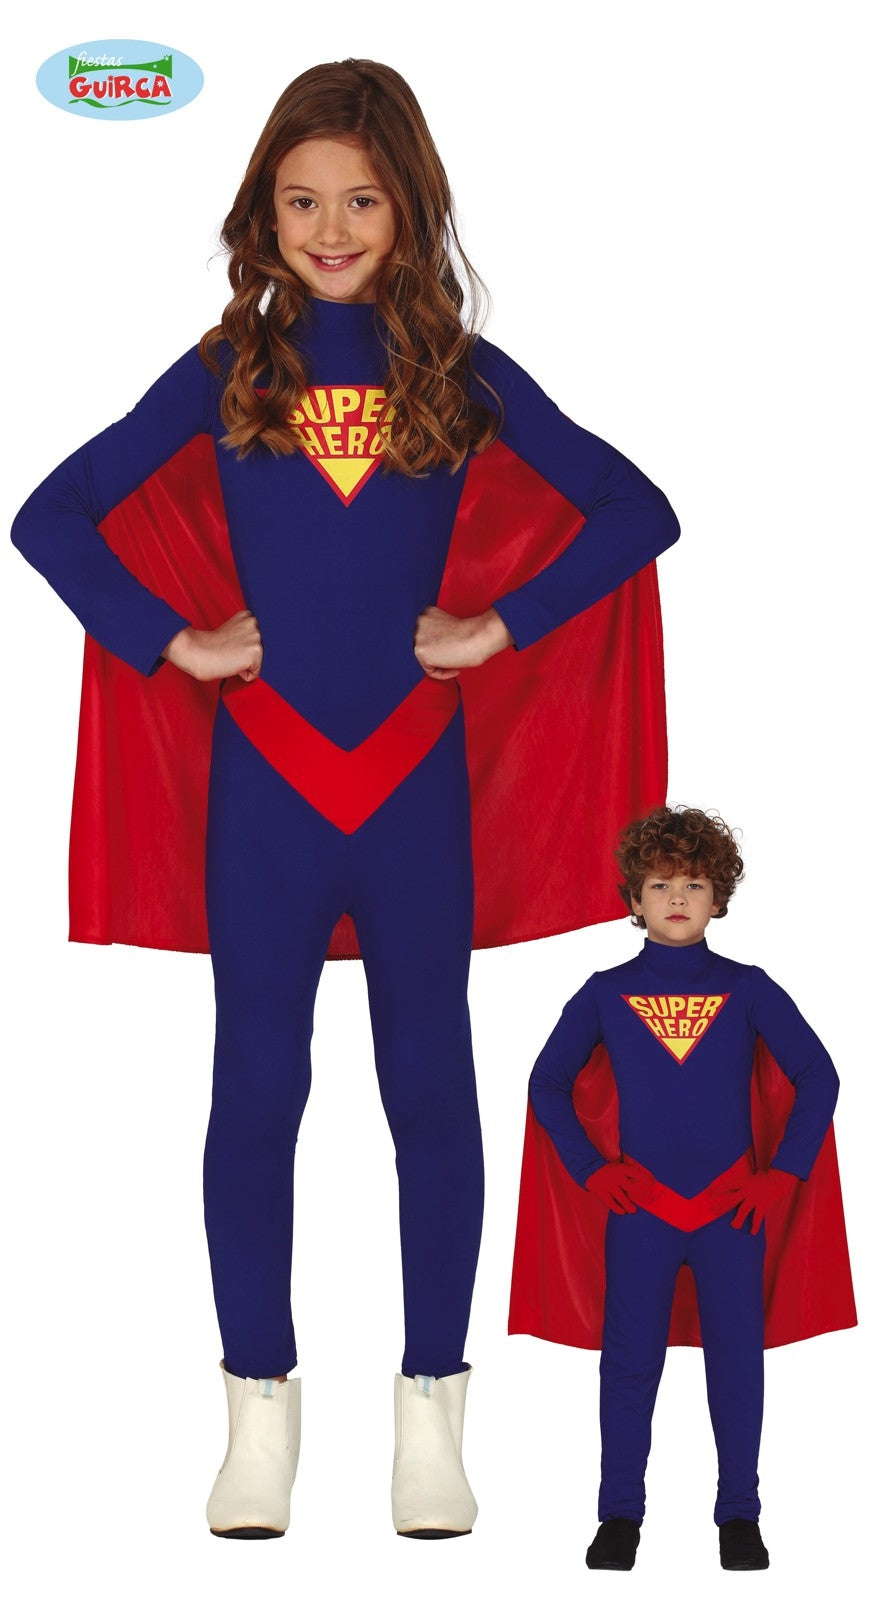 Super man kostuum kinderen